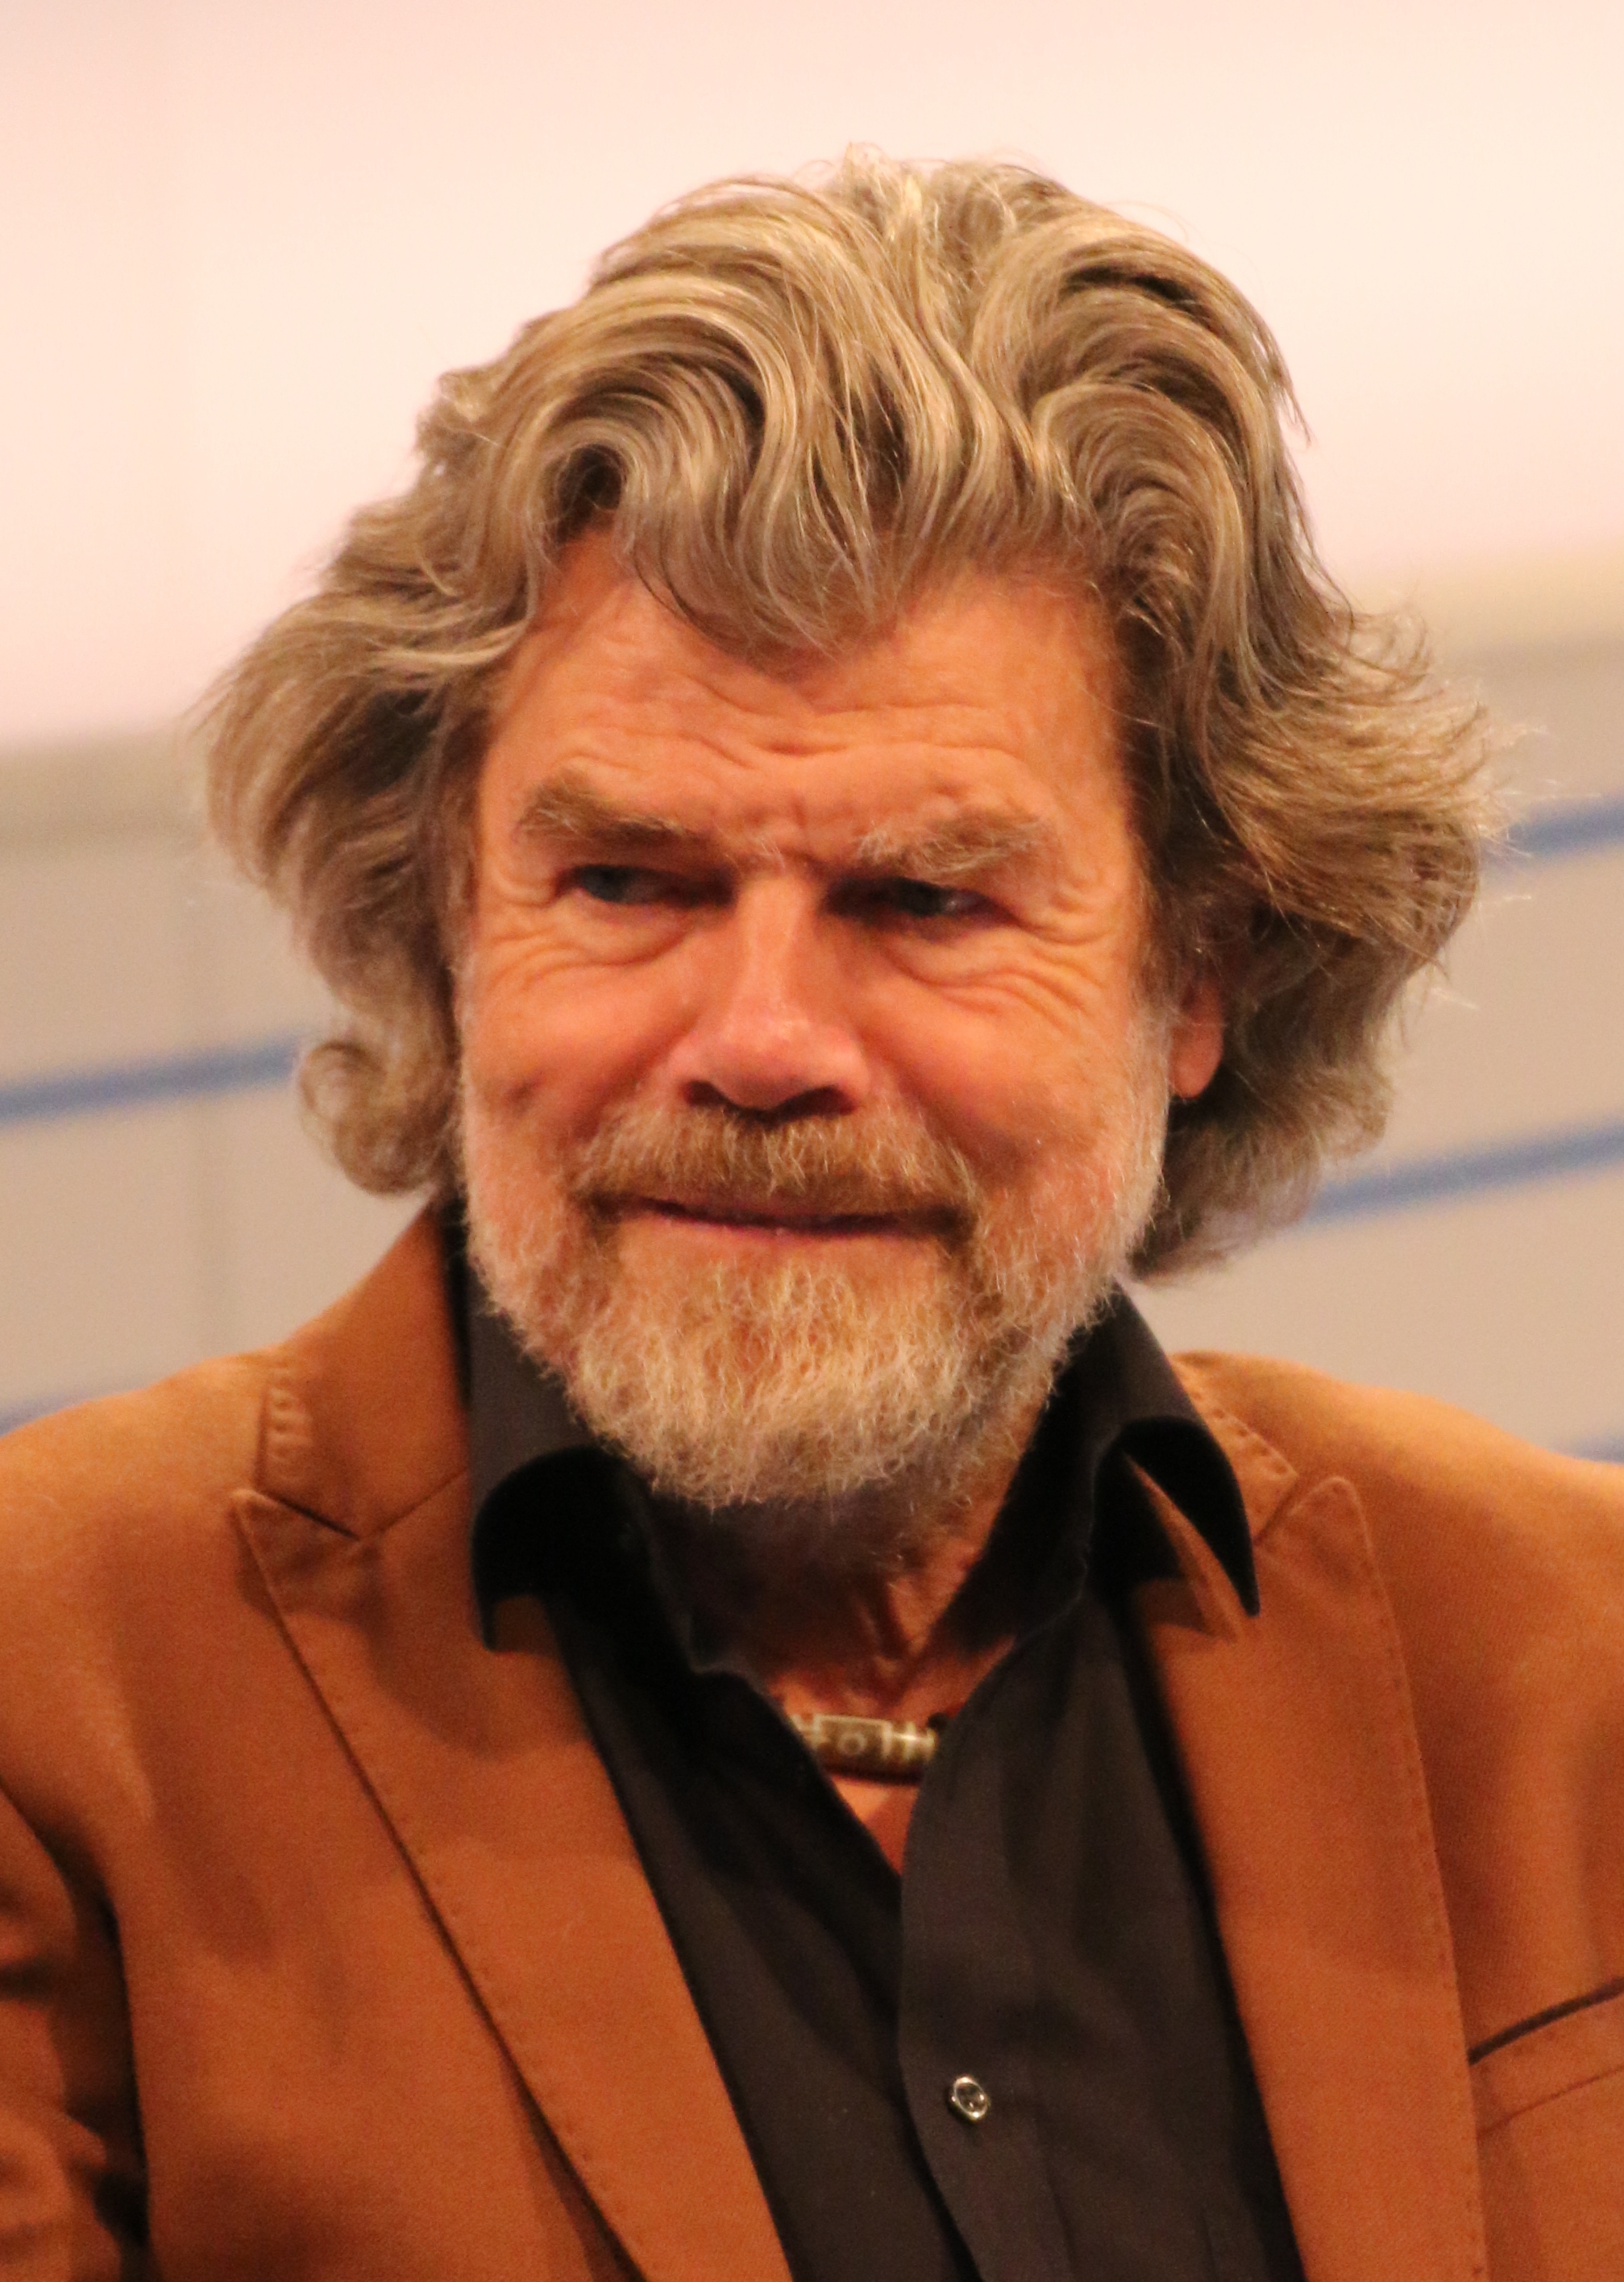 auteur Reinhold Messner de la citation Il y a des périodes sur la montagne lorsque vous existez entre vivre et mourir, parfois pendant des jours. J'ai vécu cela avec mon frère sur Nanga Parbat. C'est très difficile, mais c'est l'expérience la plus intense. Et toujours après de telles expériences, quand j'étais de retour parmi les gens, je sentais que j'avais renommé.